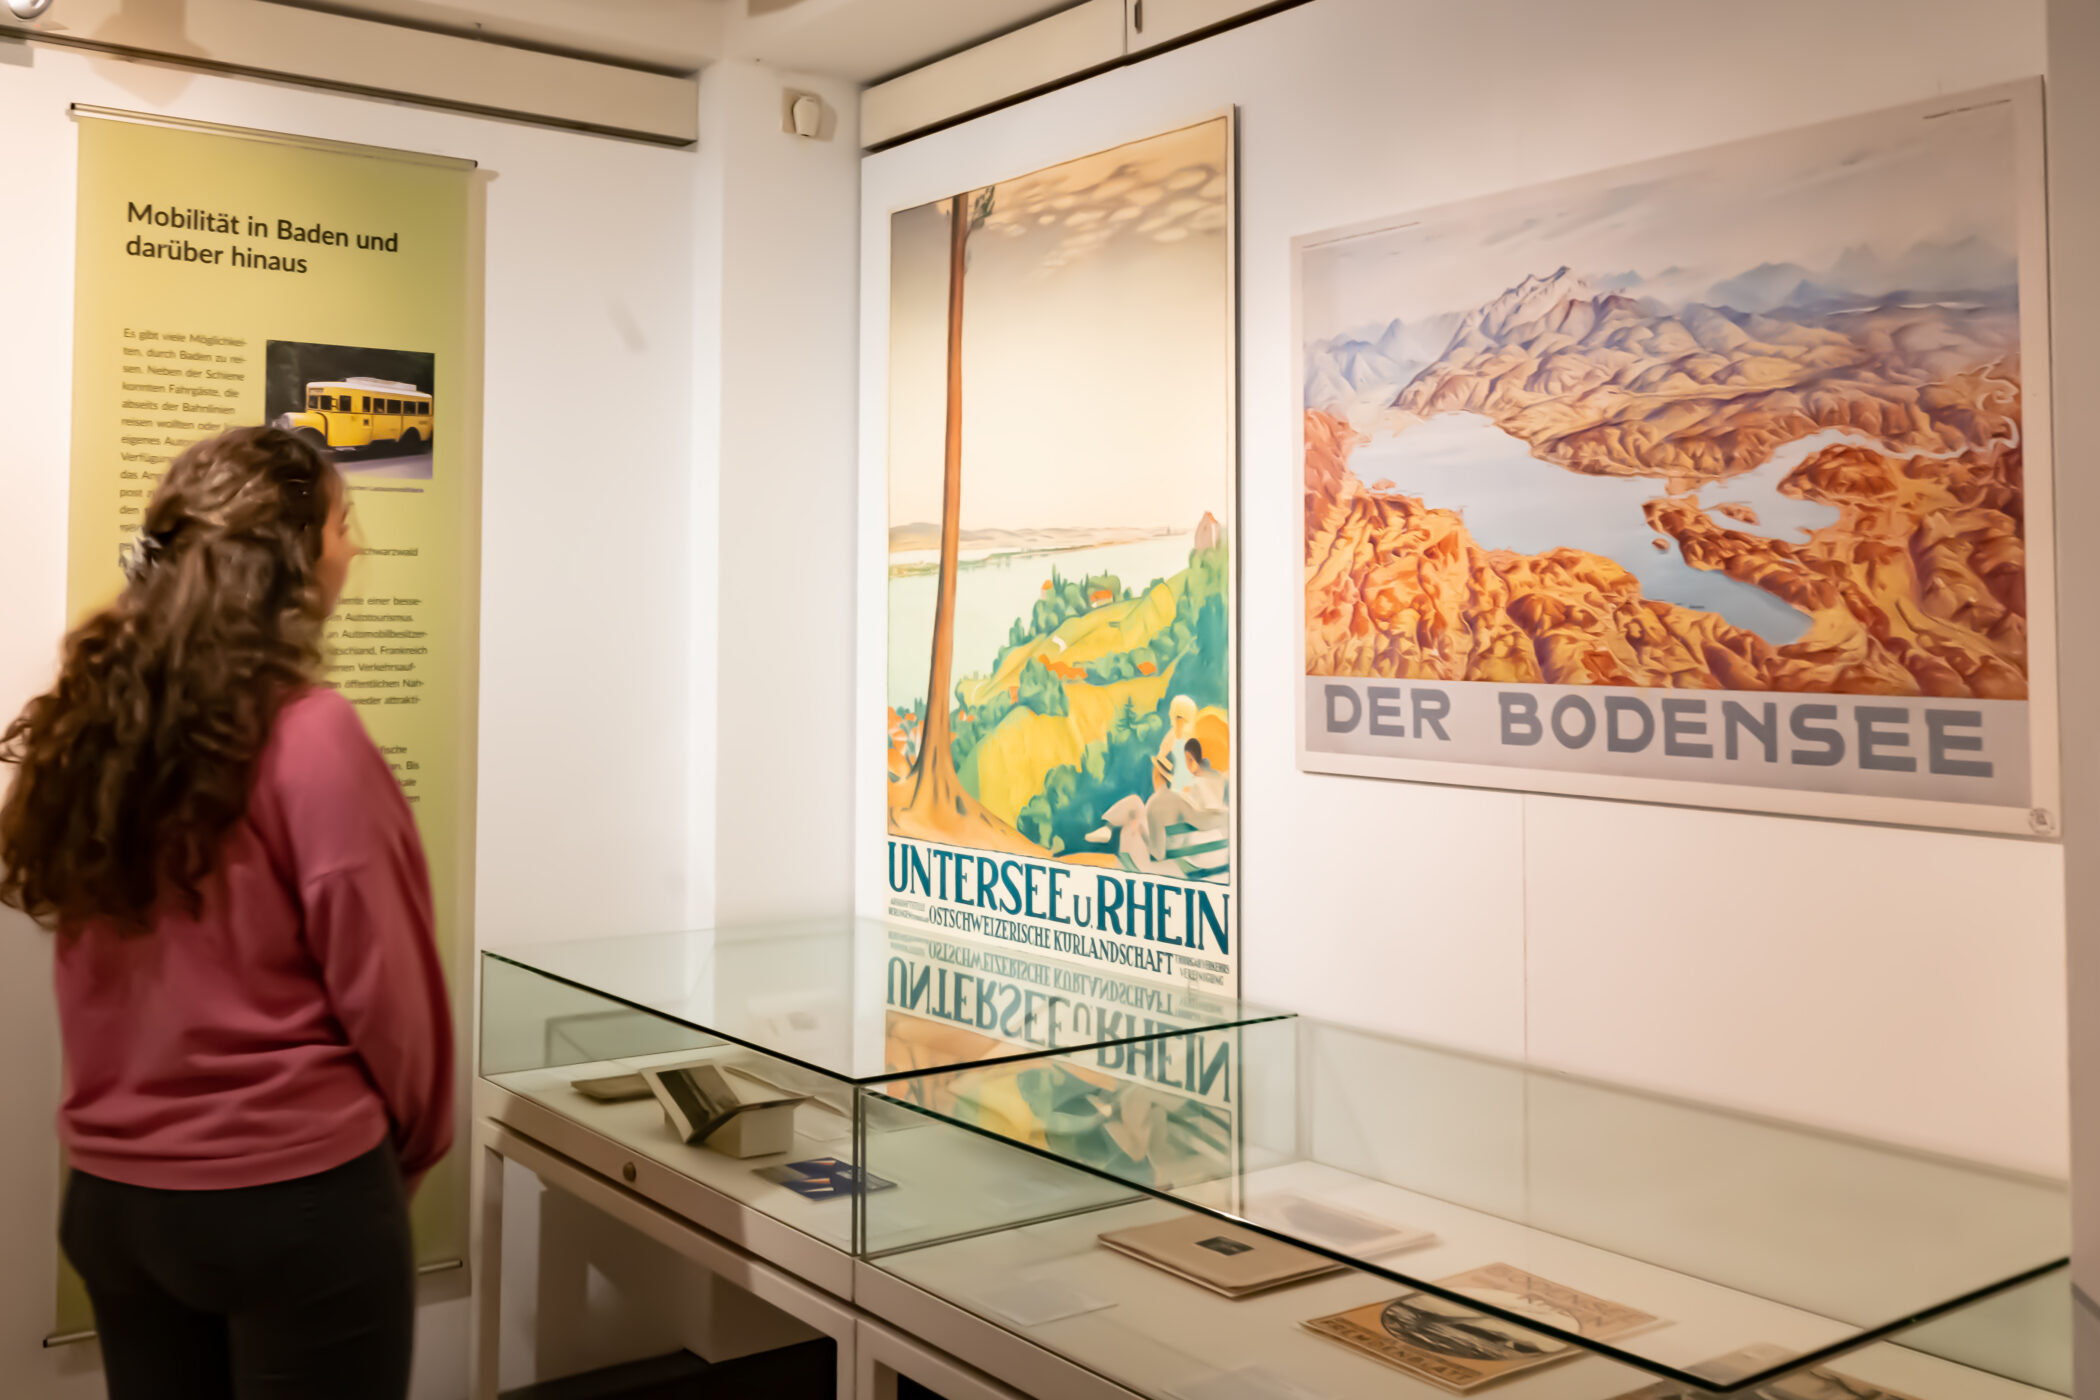 Bildmotive auf Werbeplakaten zeigen, wie der Kulturraum Schwarzwald in den vergangenen 150 Jahren sowohl beworben als auch geprägt wurde.